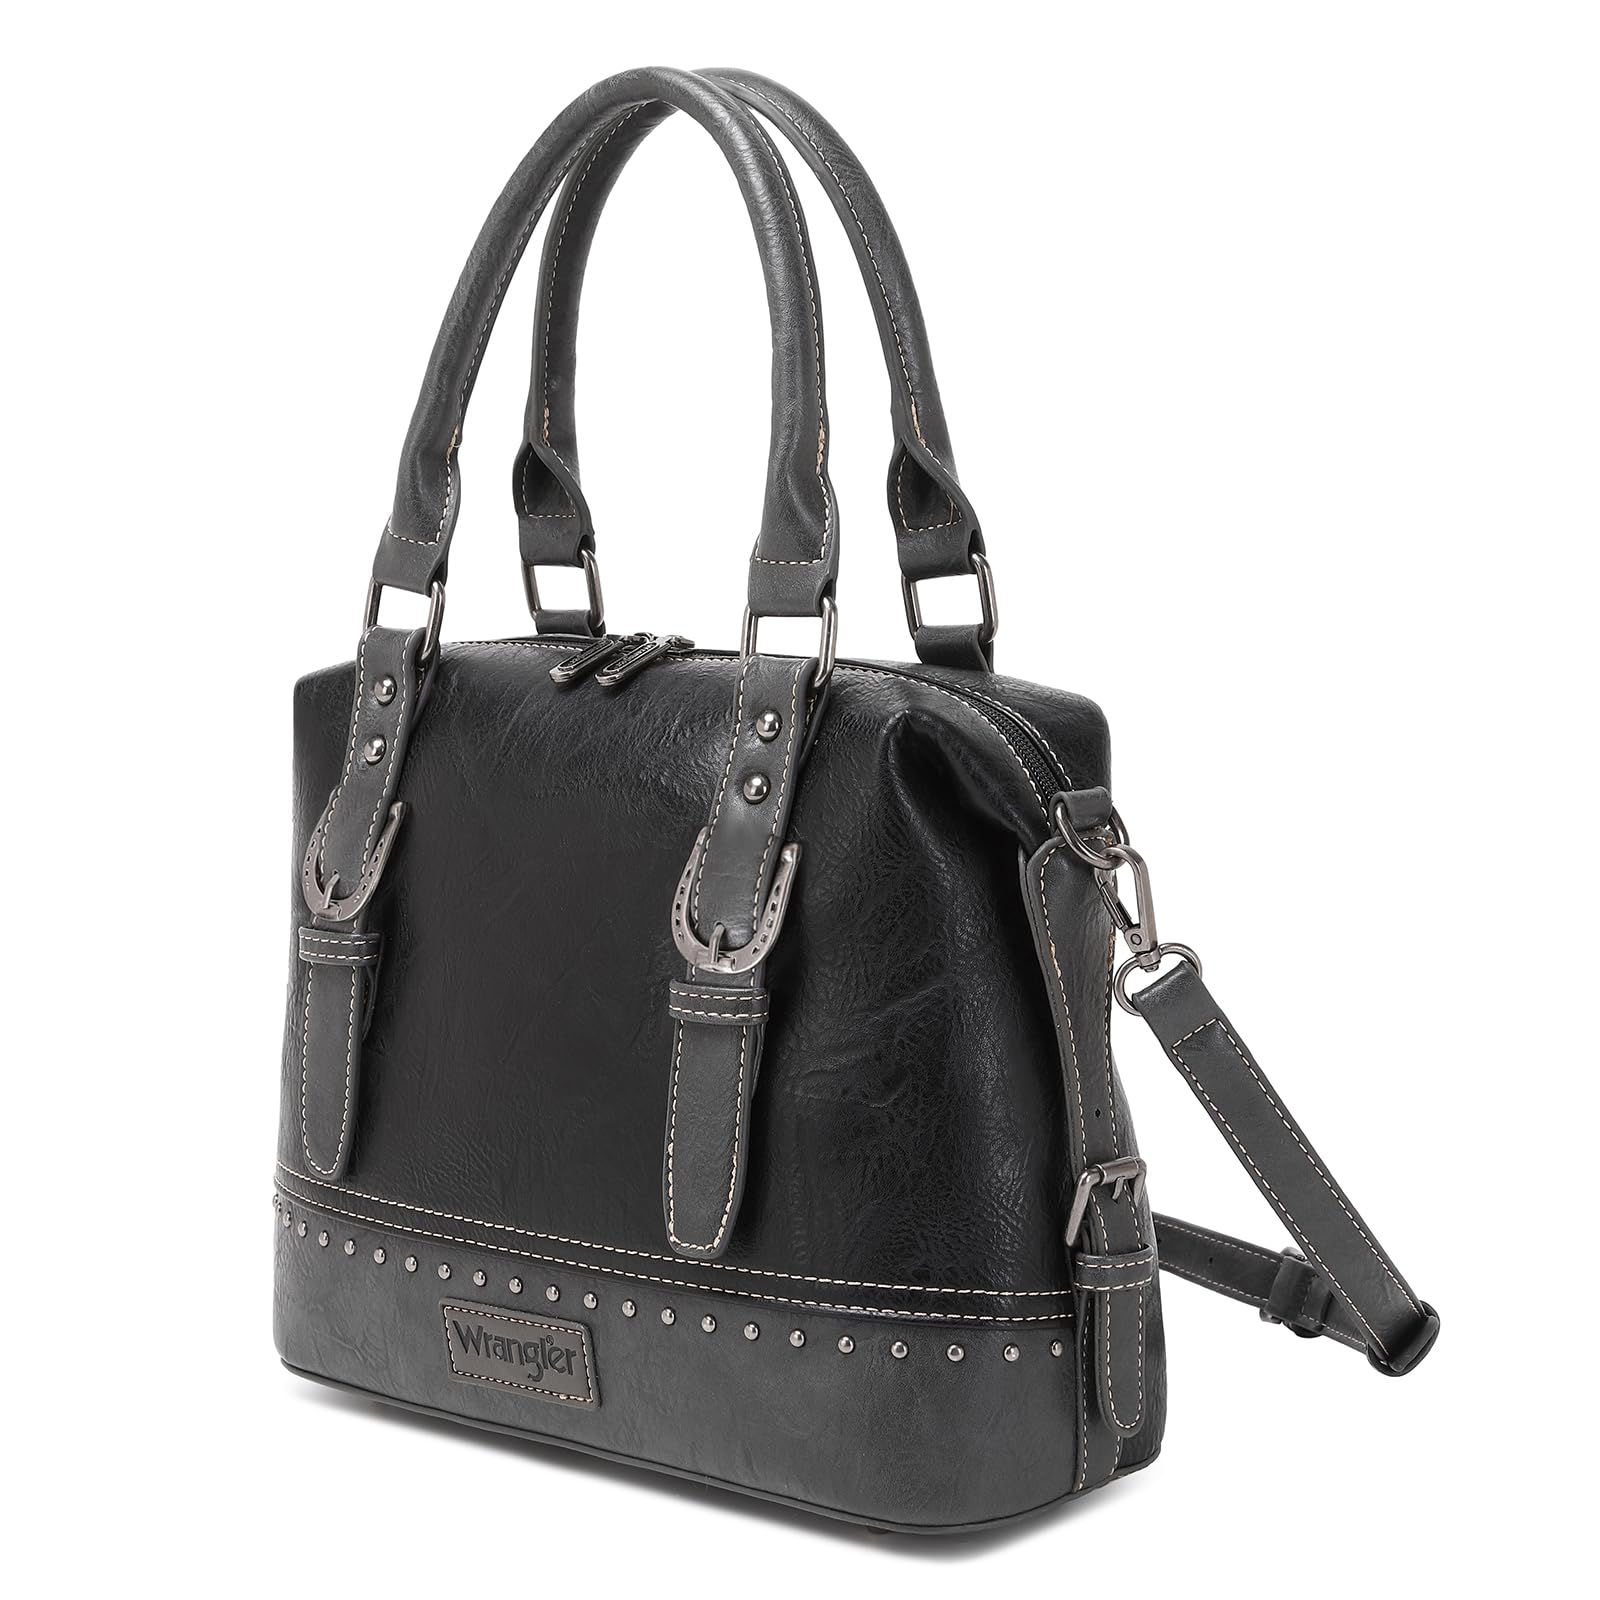 Wrangler Doctor Bag for Women Satchel Handbags